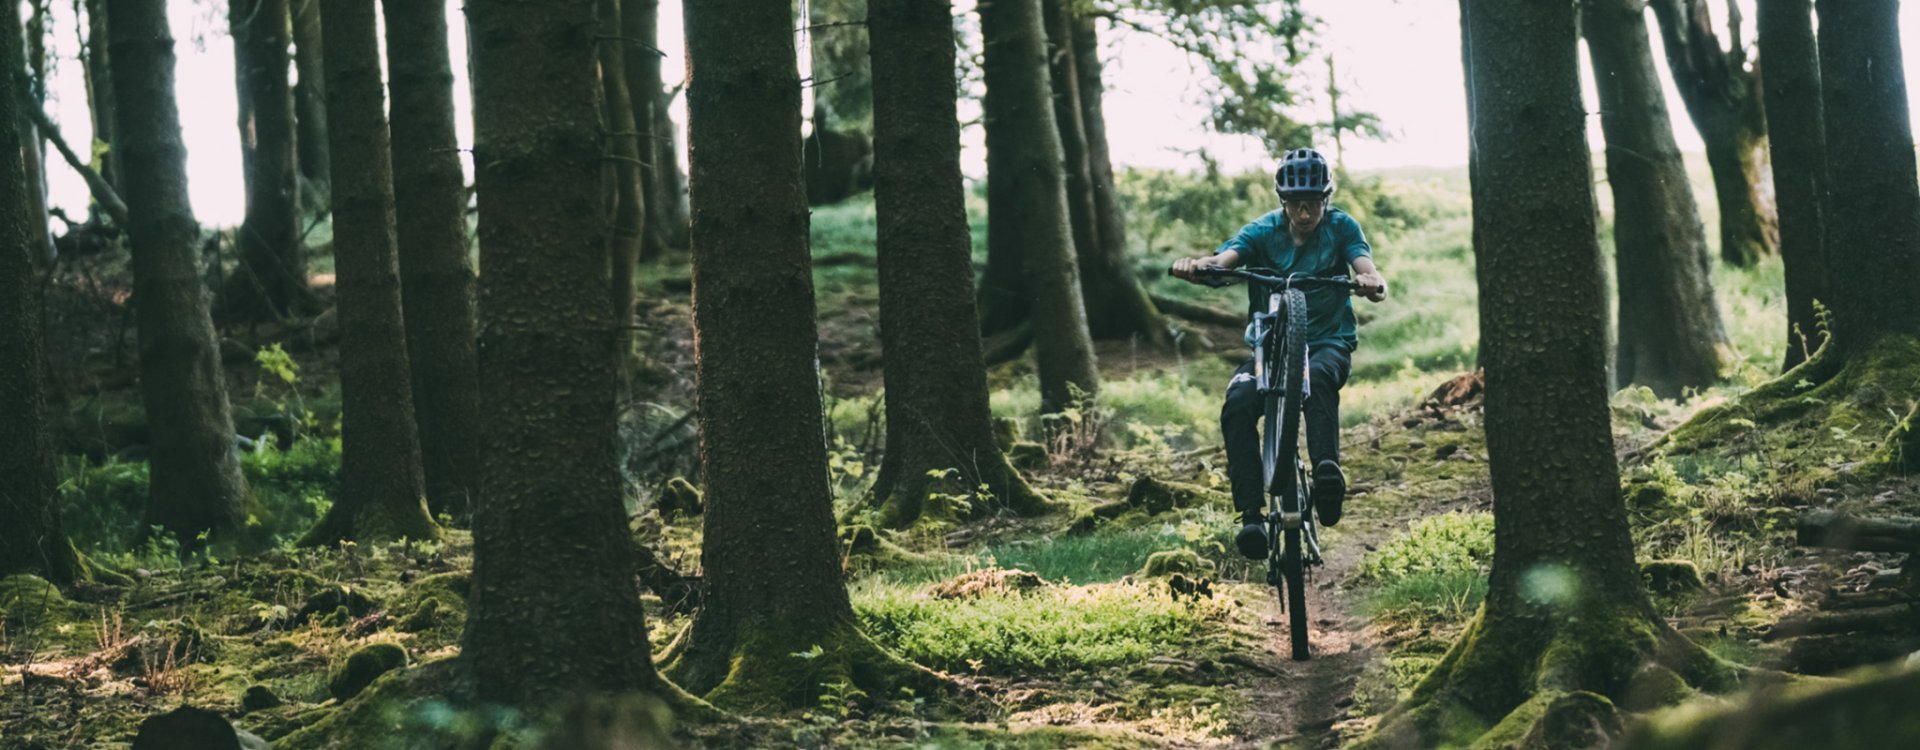 Christoph de bc haciendo un Wheelie cuesta abajo en una bici de montaña en un sendero forestal.